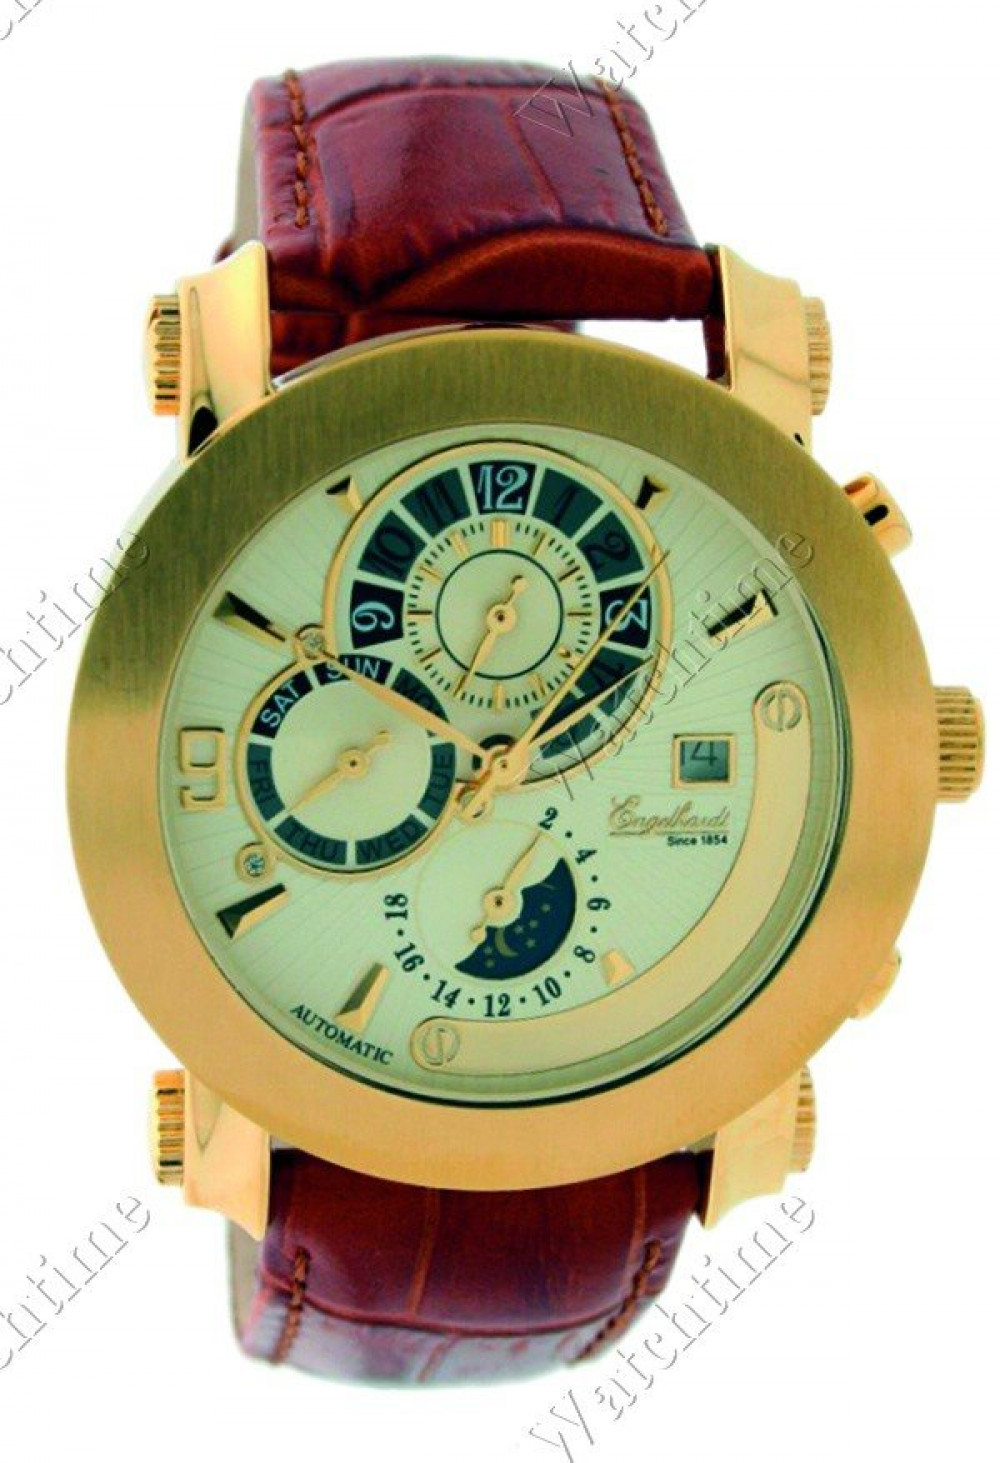 Zegarek firmy Engelhardt, model 385732029015